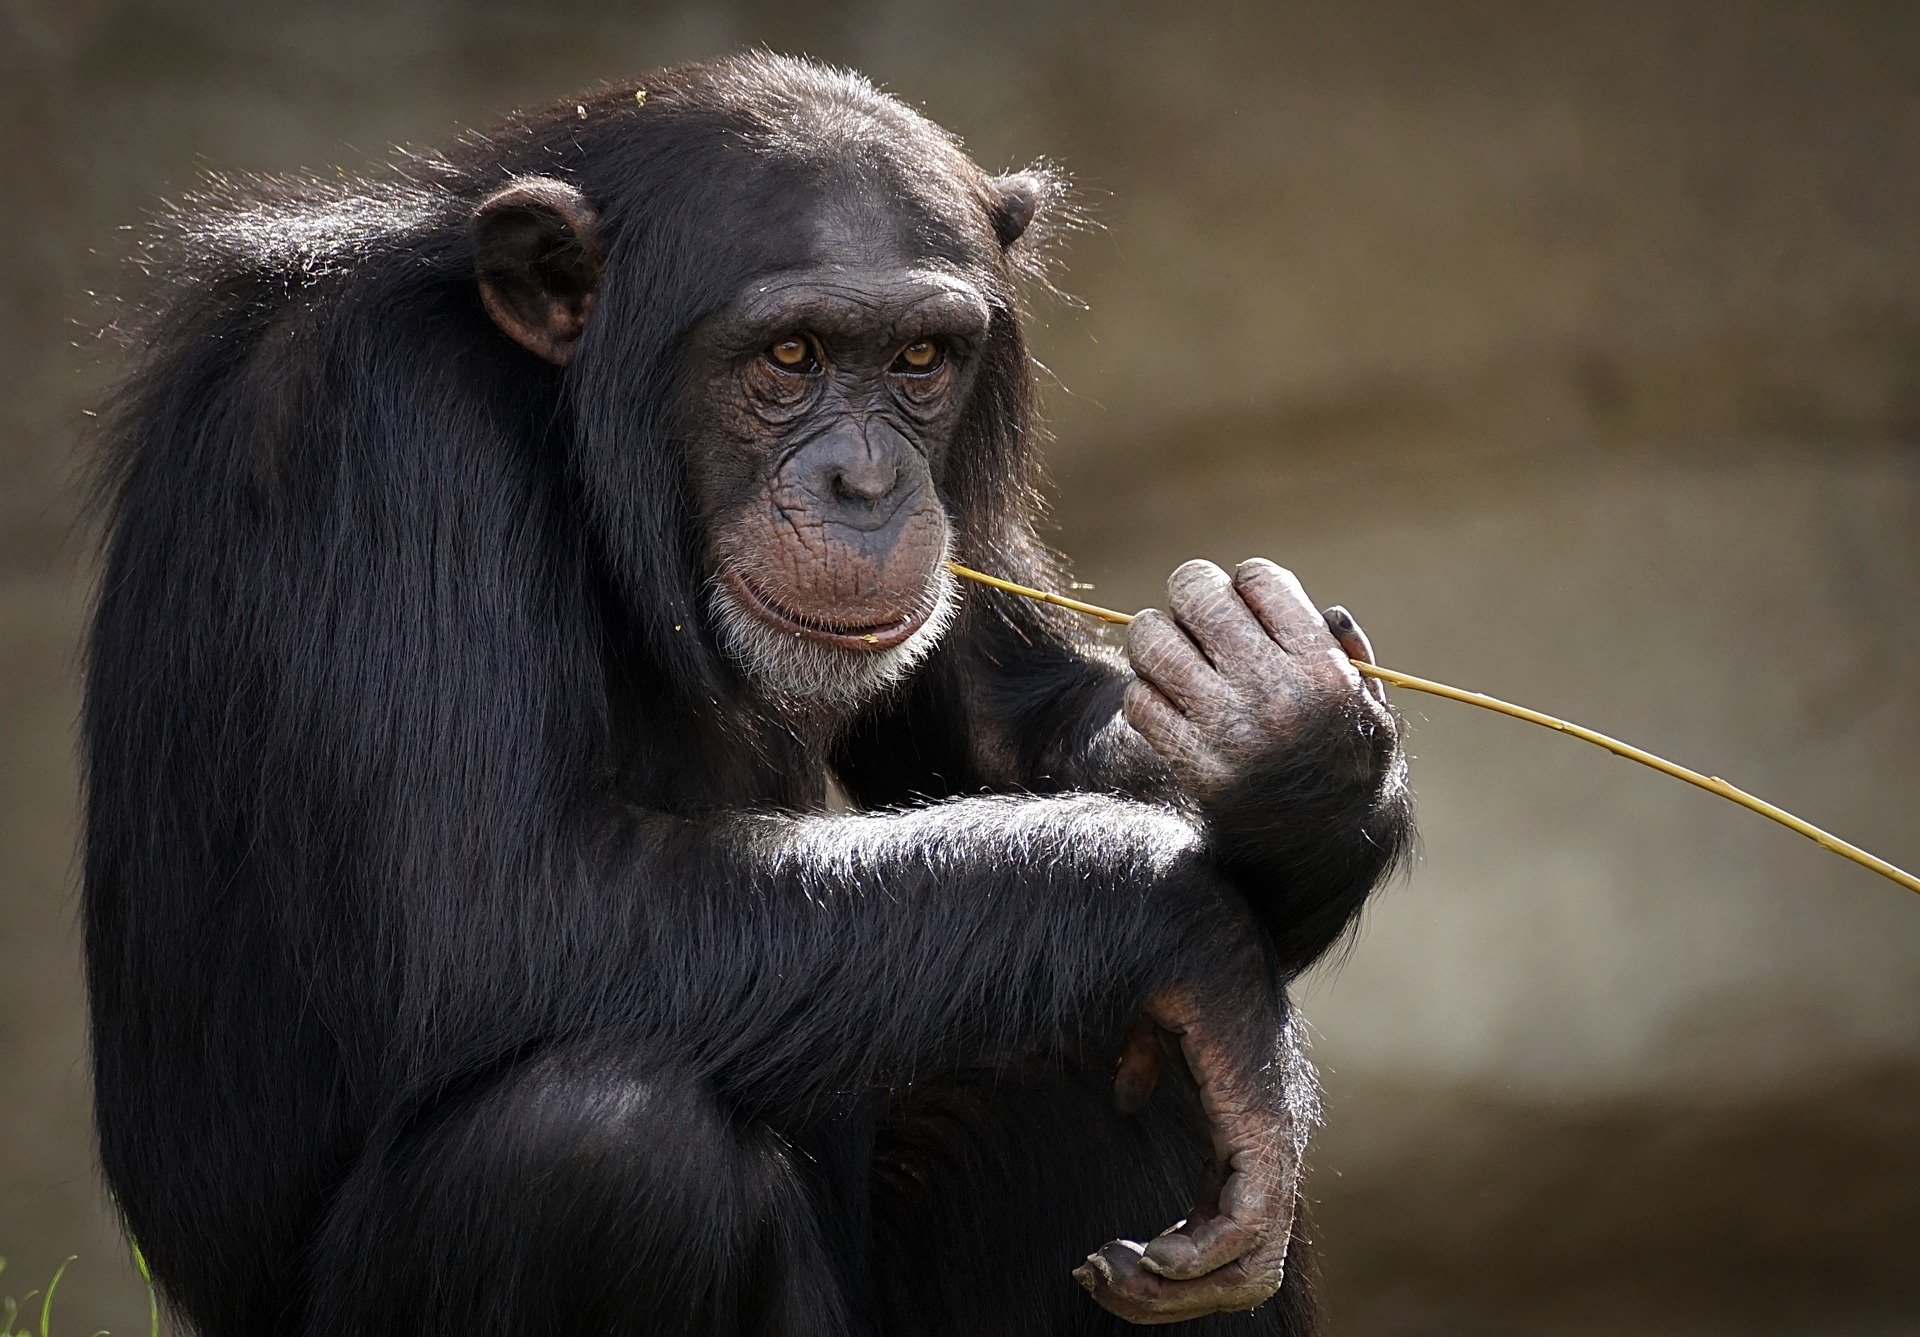 În Brazilia, mai multe maimuțe au fost otrăvite. OMS: actuala epidemie n-are legătură cu maimuțele